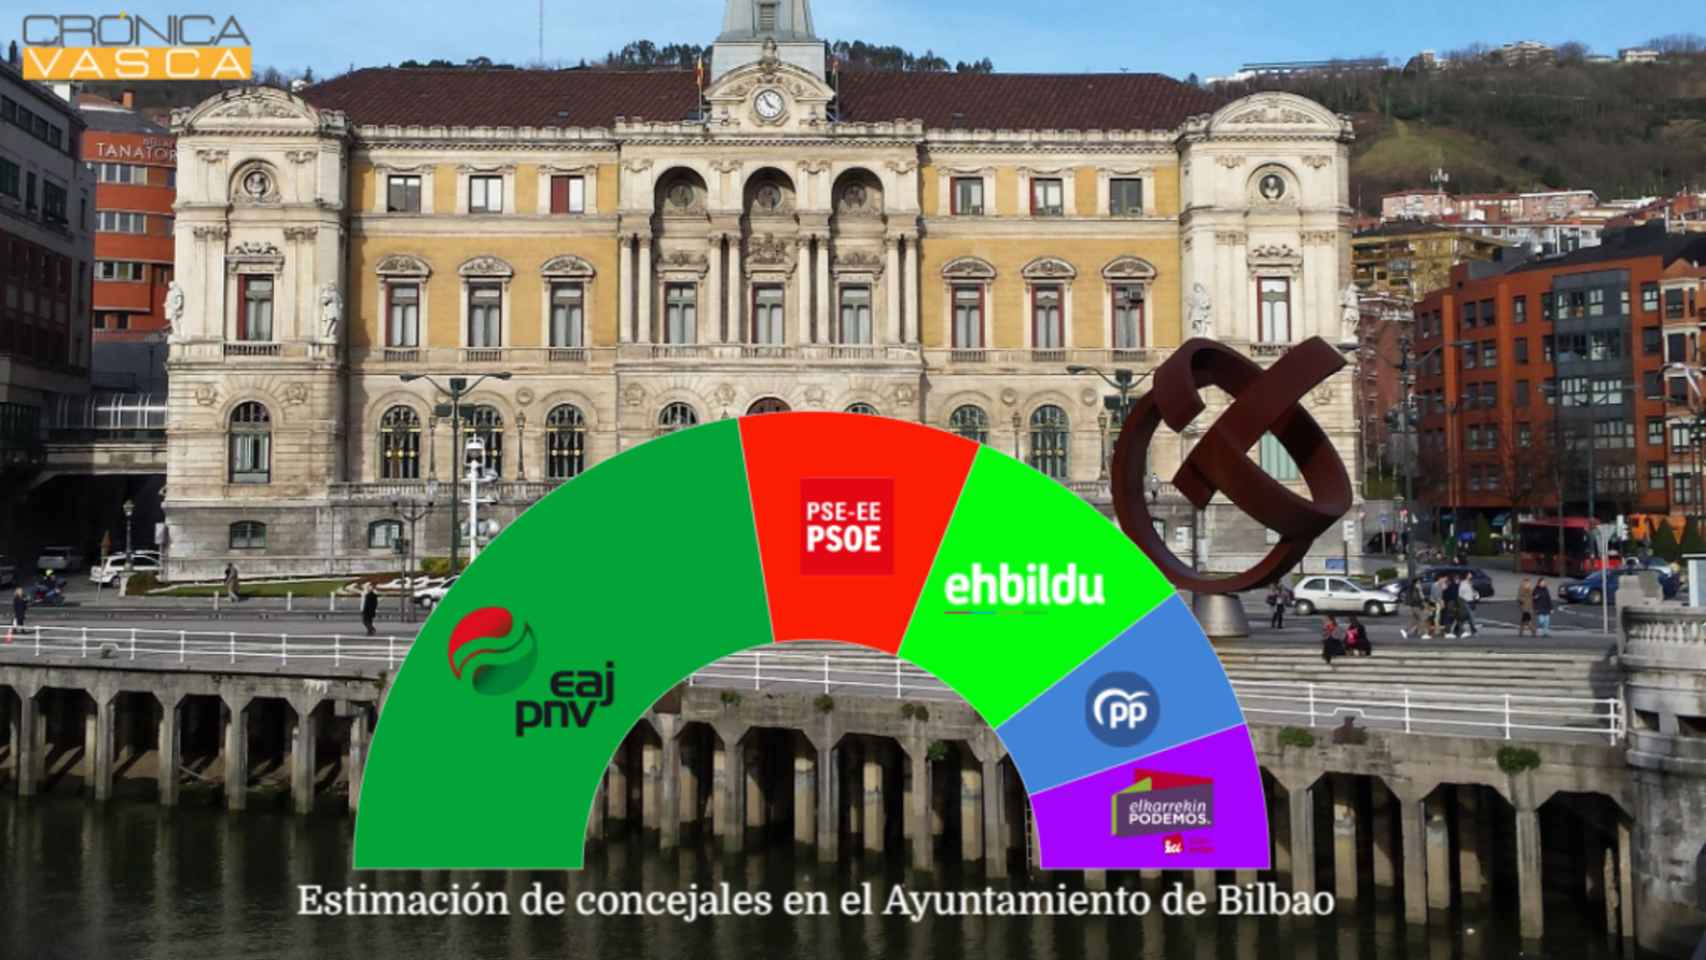 Panel electoral de EM-Electomana para Crnica Vasca en el Ayuntamiento de Bilbao / CV